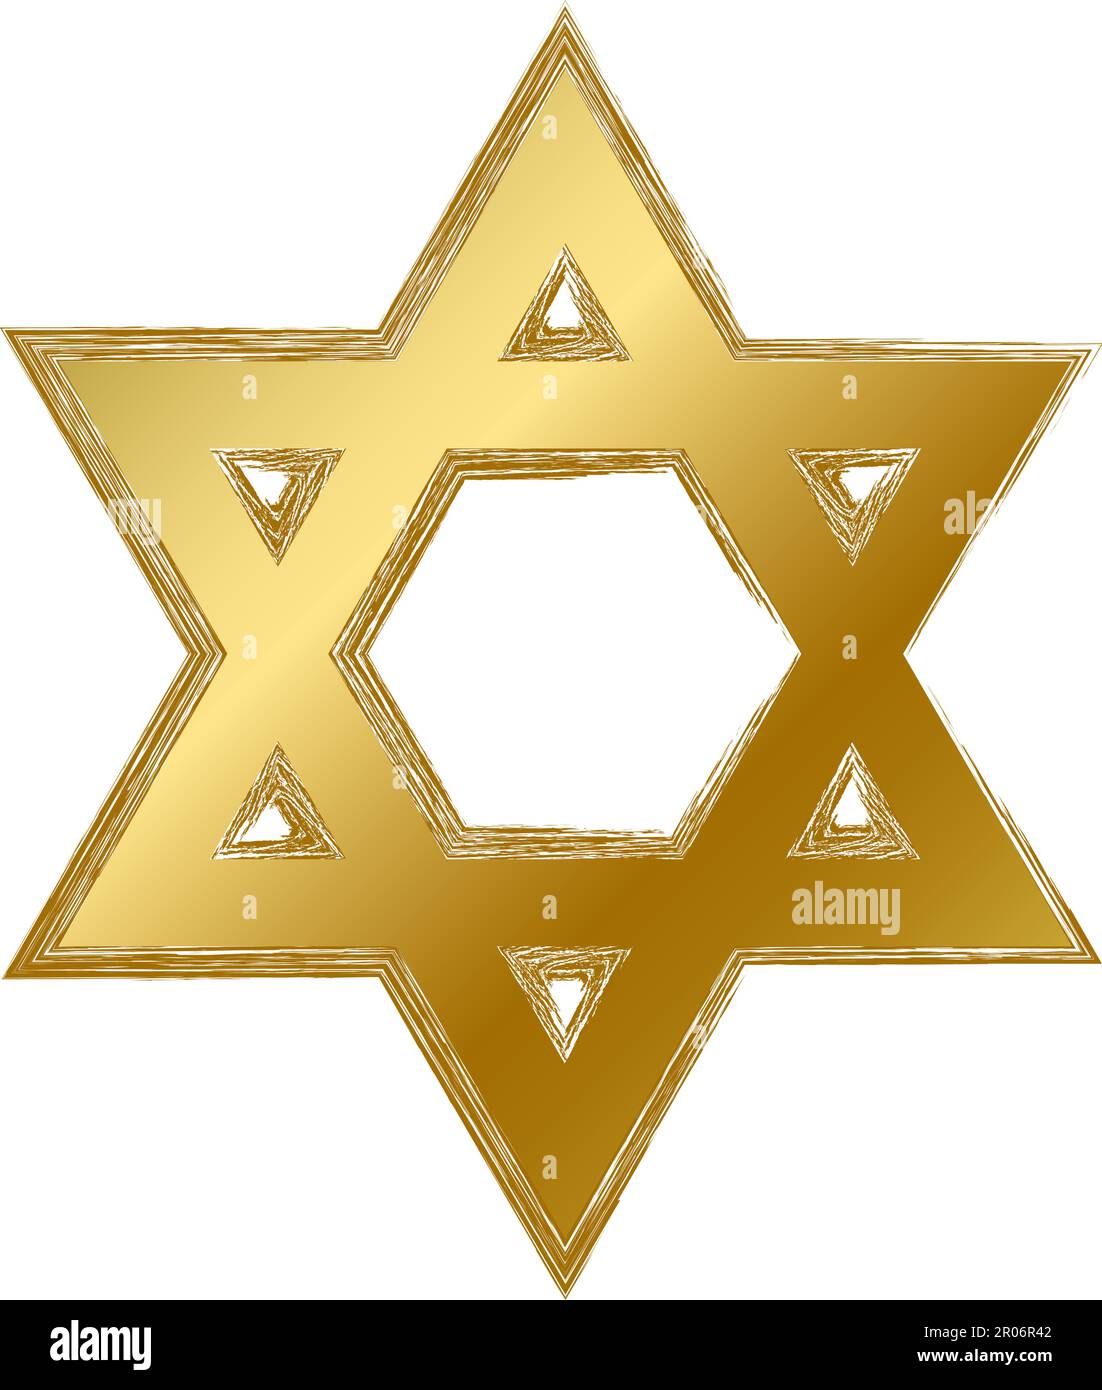 Tradizionale mistico religioso David star talisman amulet. Simbolo spirituale in stile grunge sfumato dorato. Segno vettore sacro segreto isolato su Whi Illustrazione Vettoriale